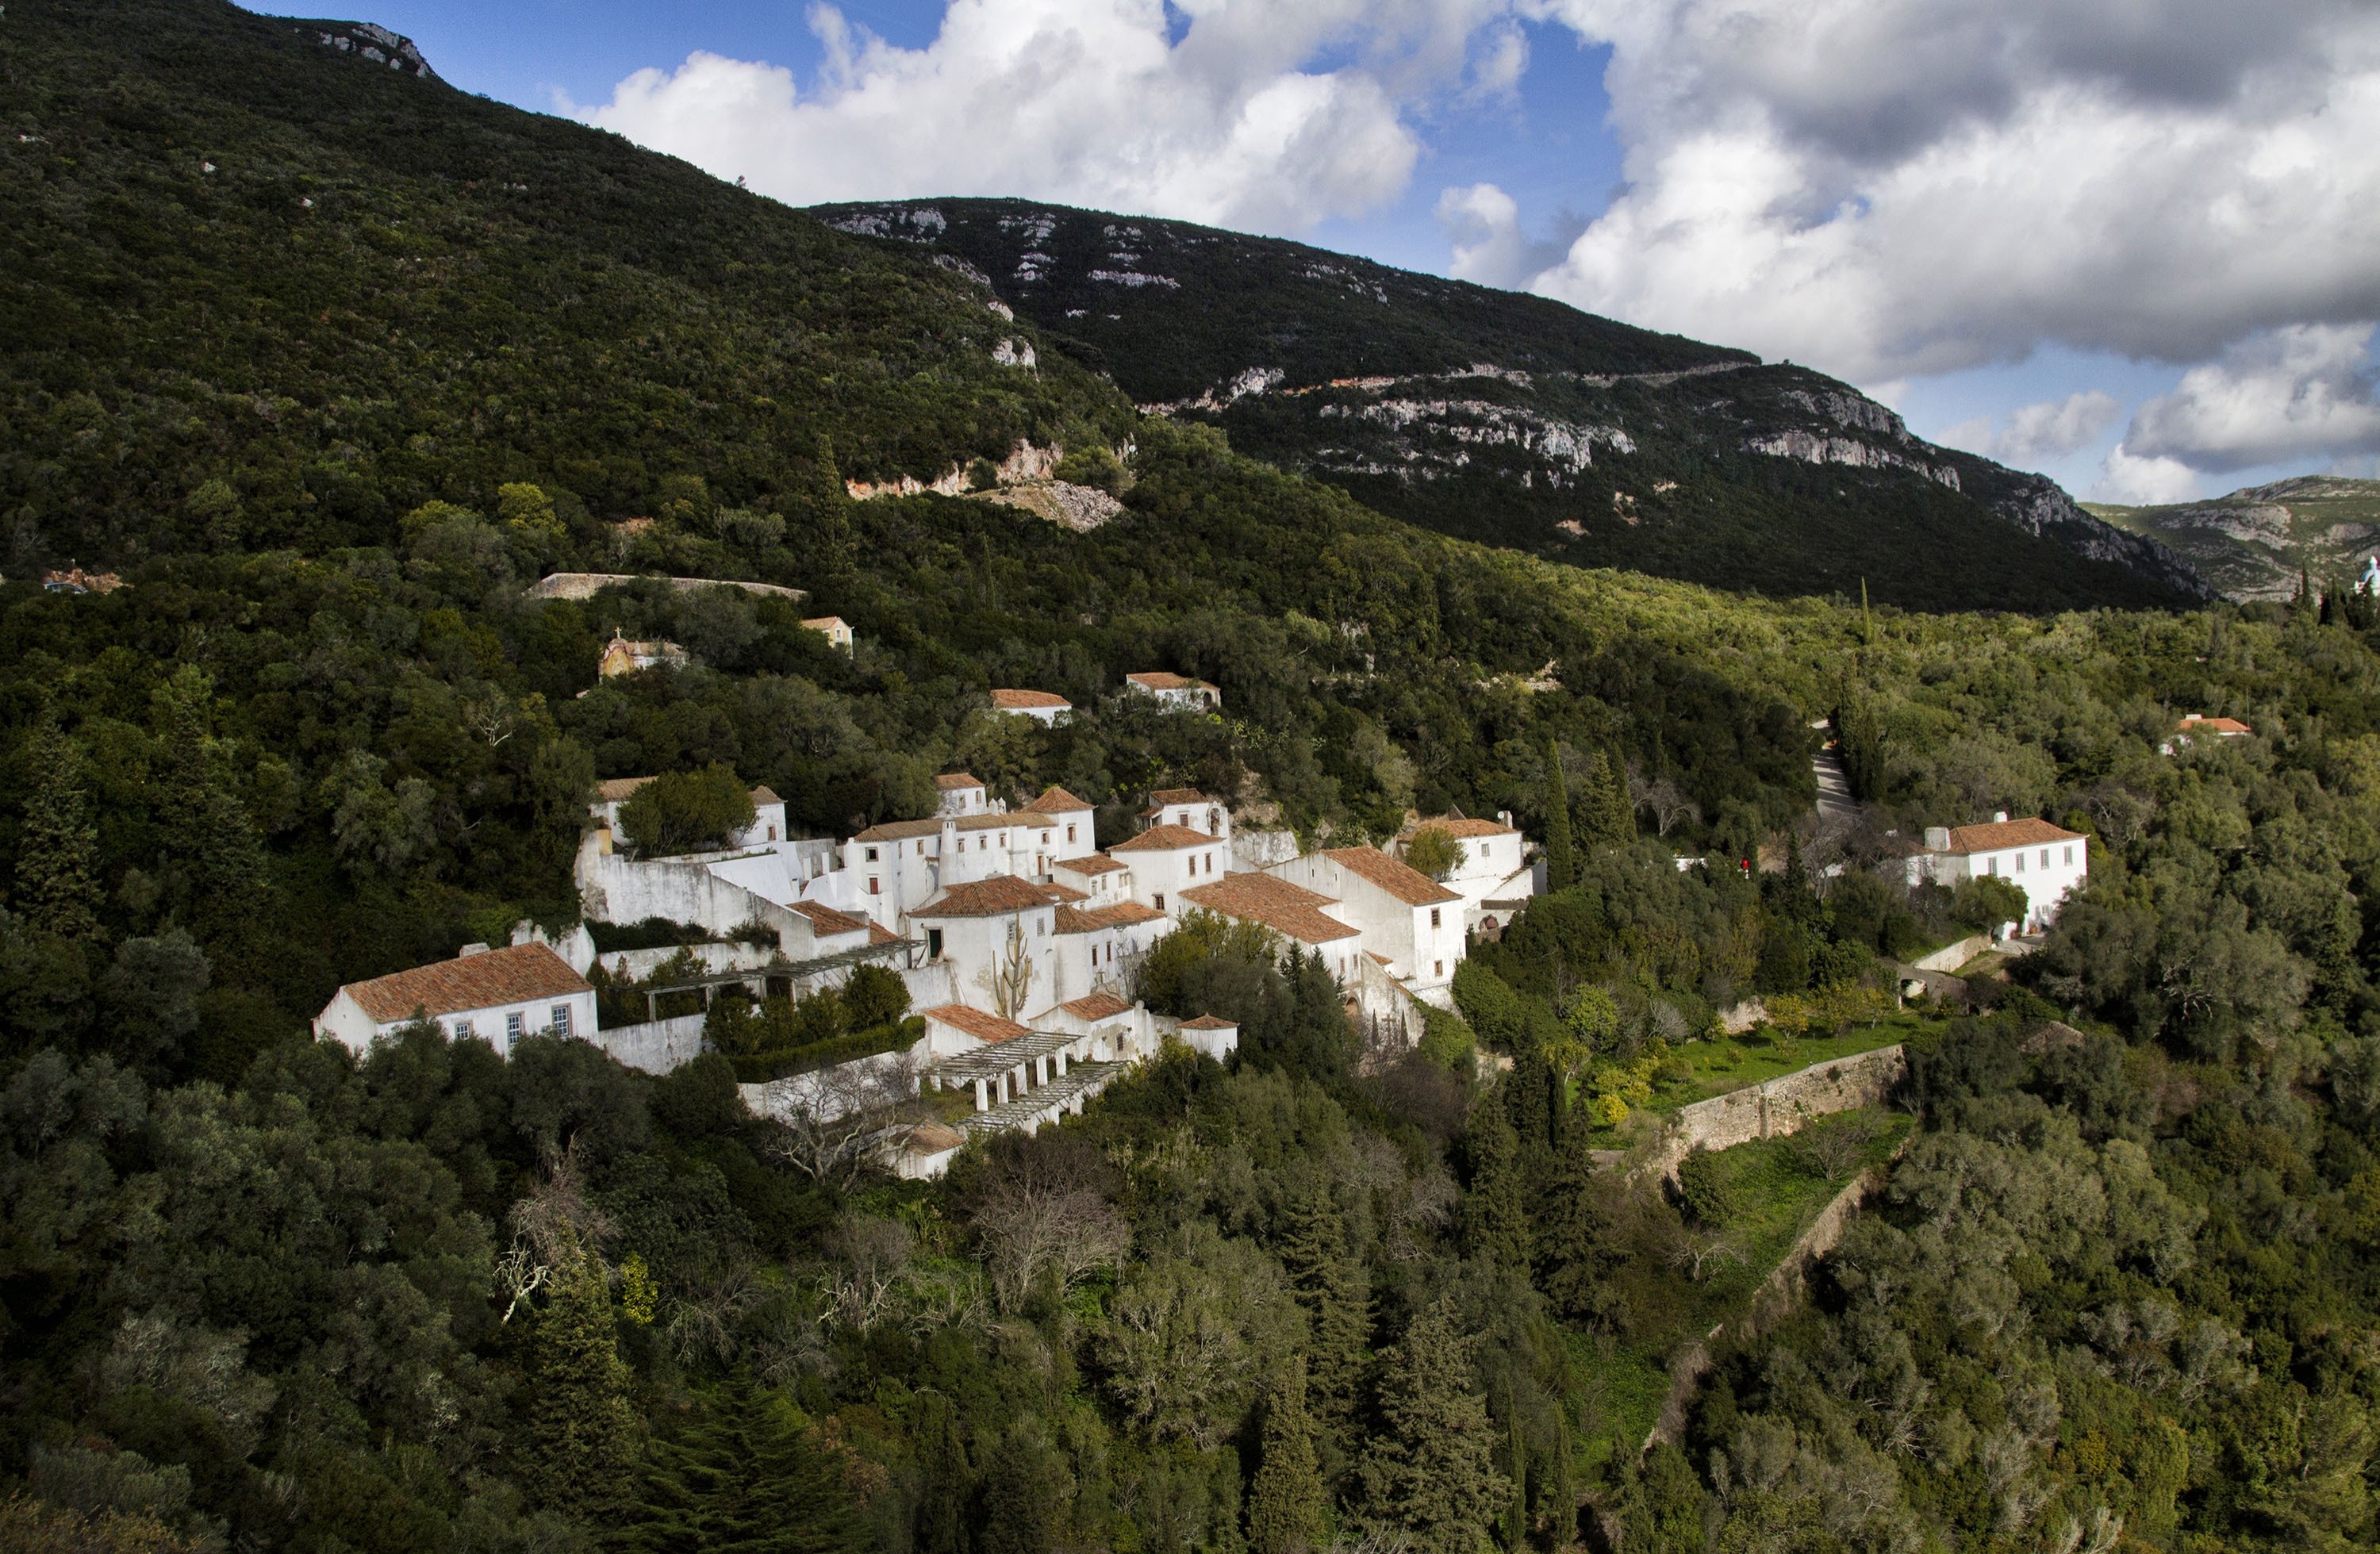 O Convento de Nosa Senhora da Arapita está localizado em uma colina em Arapita, o parque nacional de Sethupal, Portugal.  (Foto do Shutterstock)